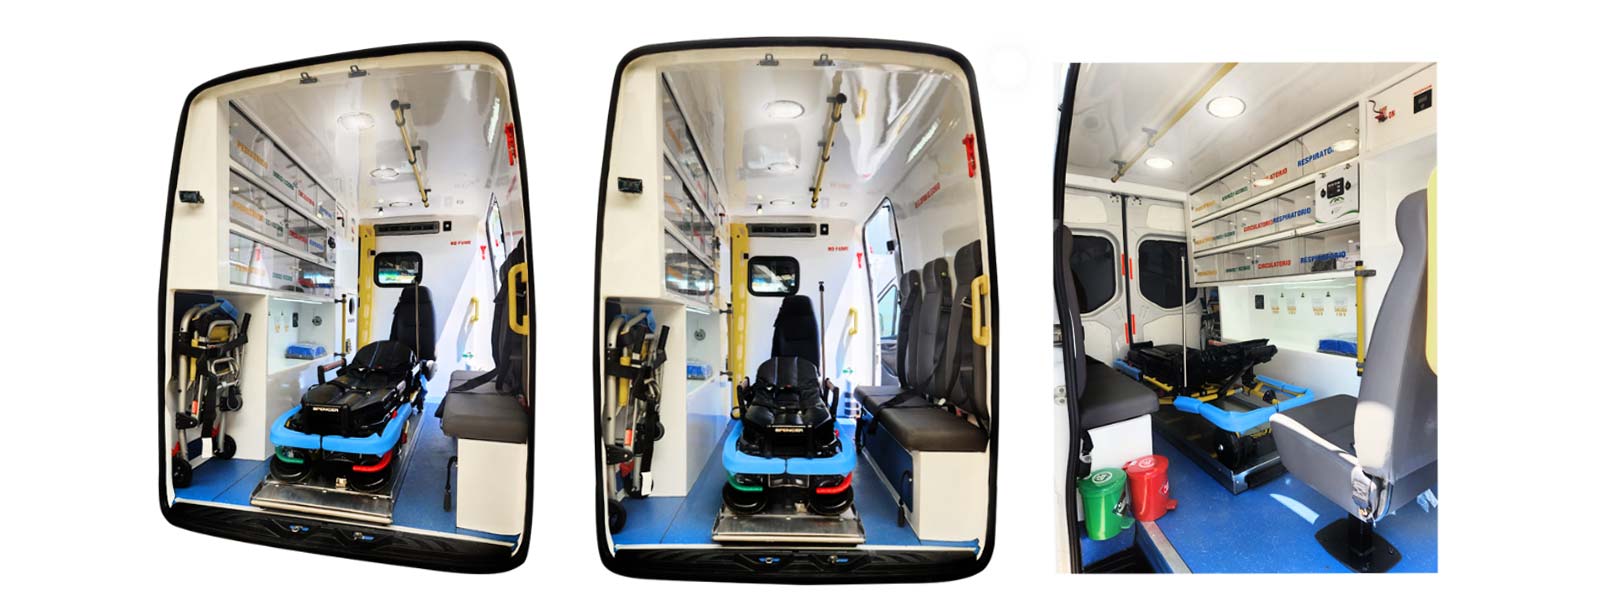 Ambulancias equipadas, Camillas y Sillas de amnulancia